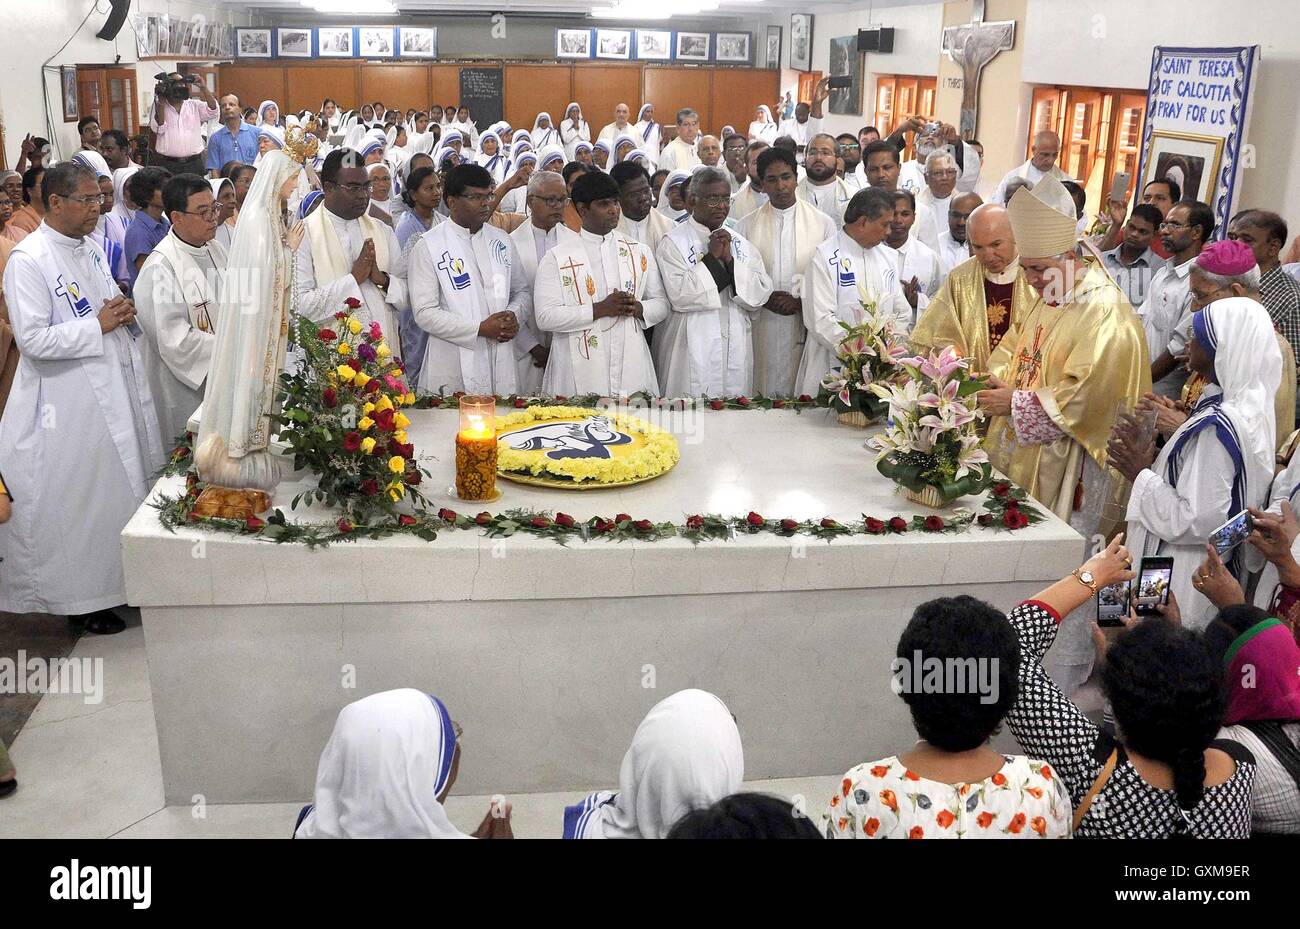 Sacerdoti Cattolici Romani le Suore Missionarie della Carità devoti di partecipare a commemorare il diciannovesimo anniversario della morte di Madre Teresa di Calcutta tomba Foto Stock